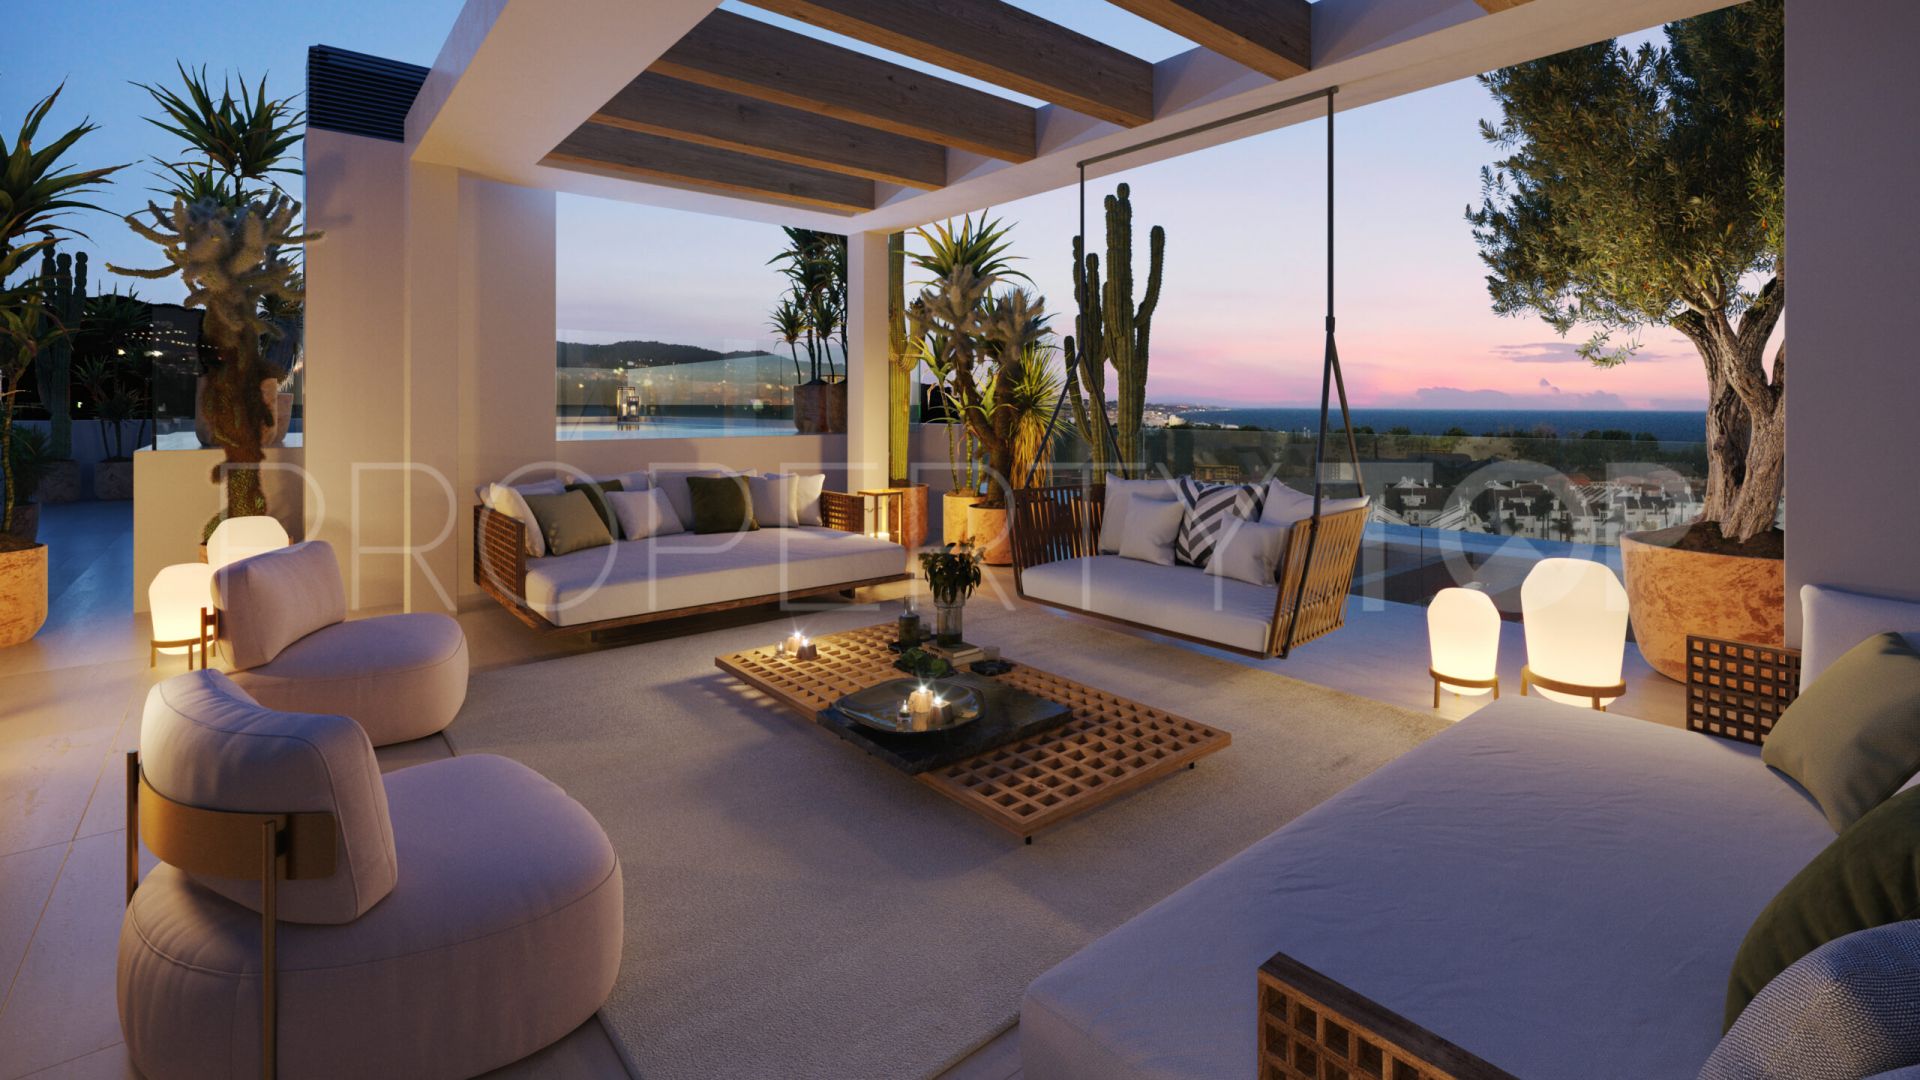 4 bedrooms penthouse in Señorio de Marbella for sale